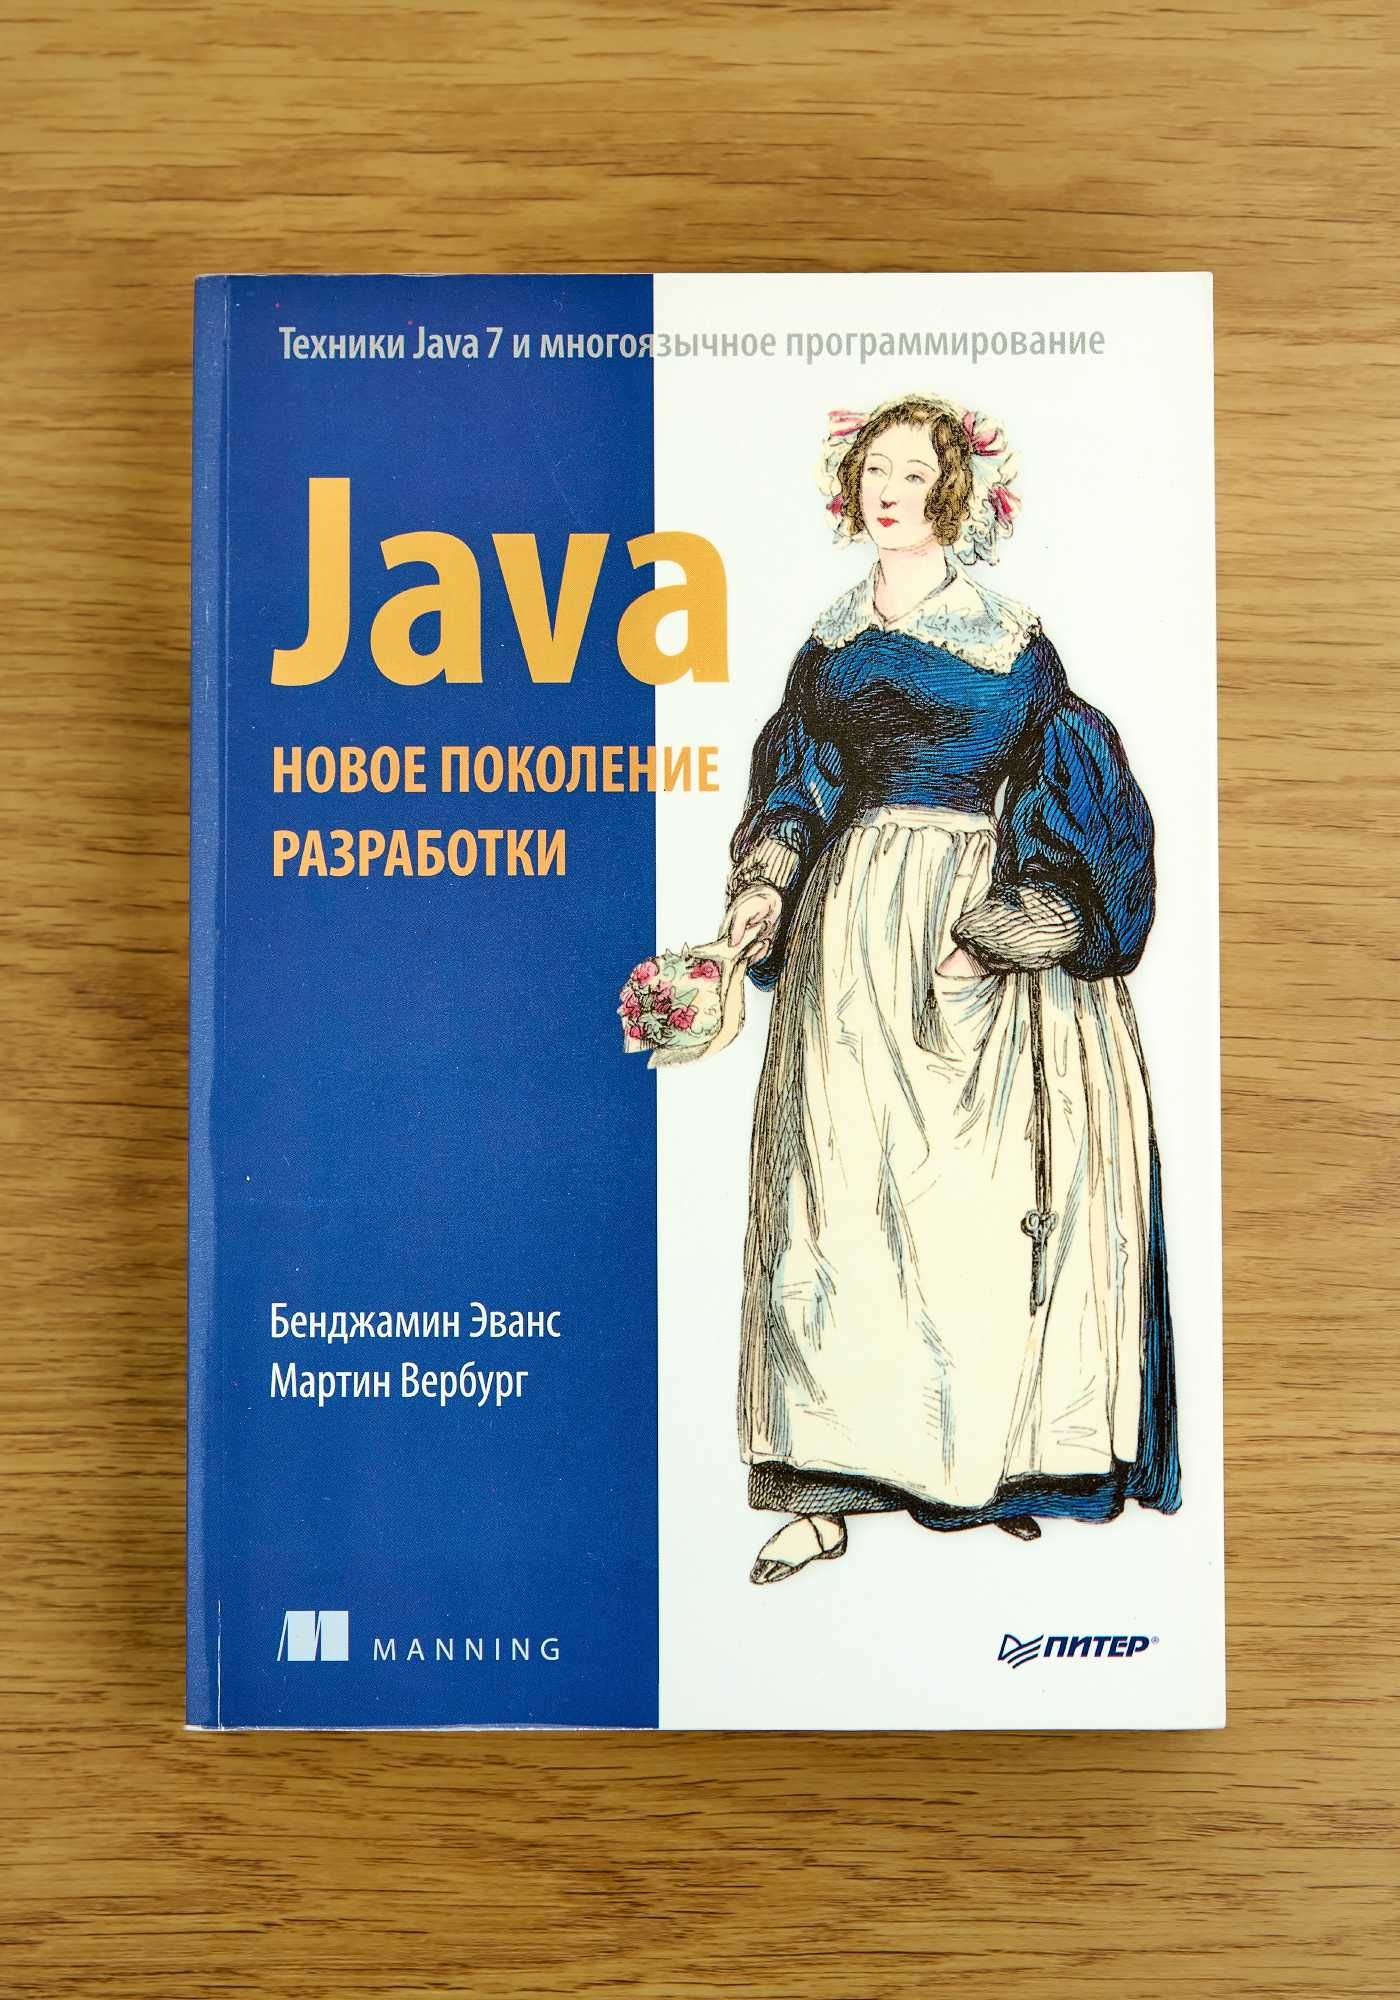 Книга "Java. Новое поколение разработки"